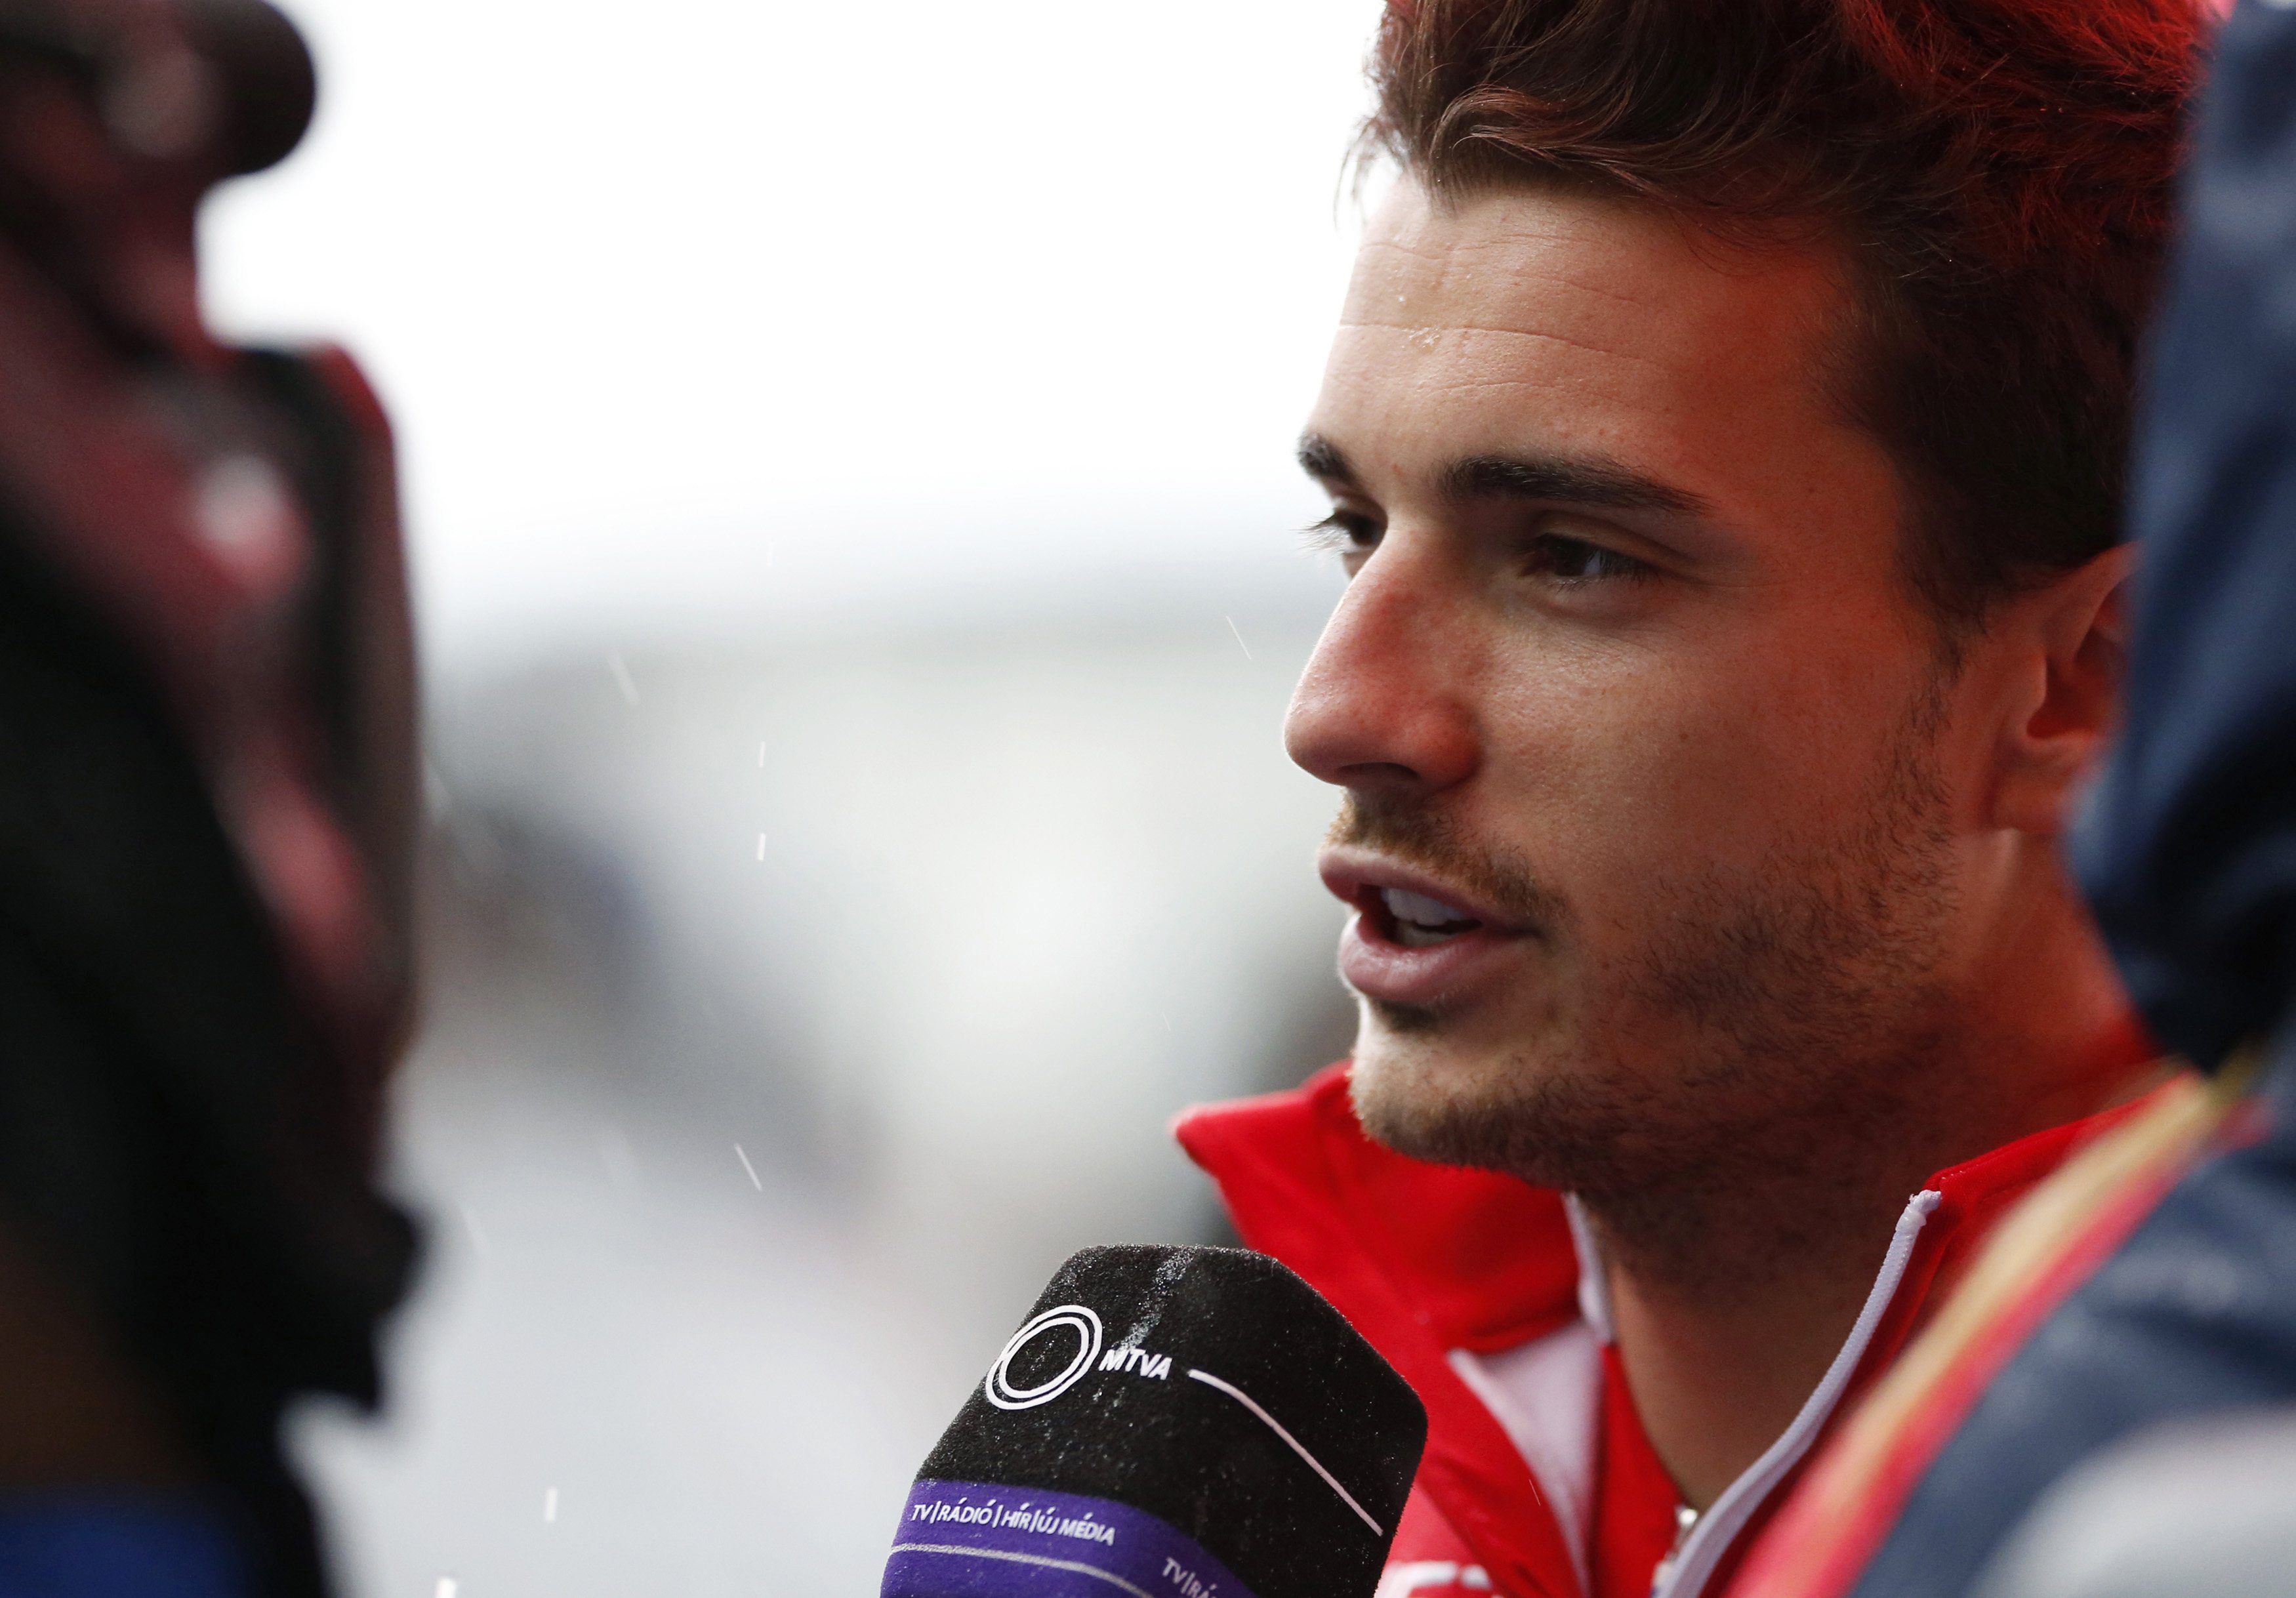 El piloto Jules Bianchi sufre un traumatismo cerebral severo